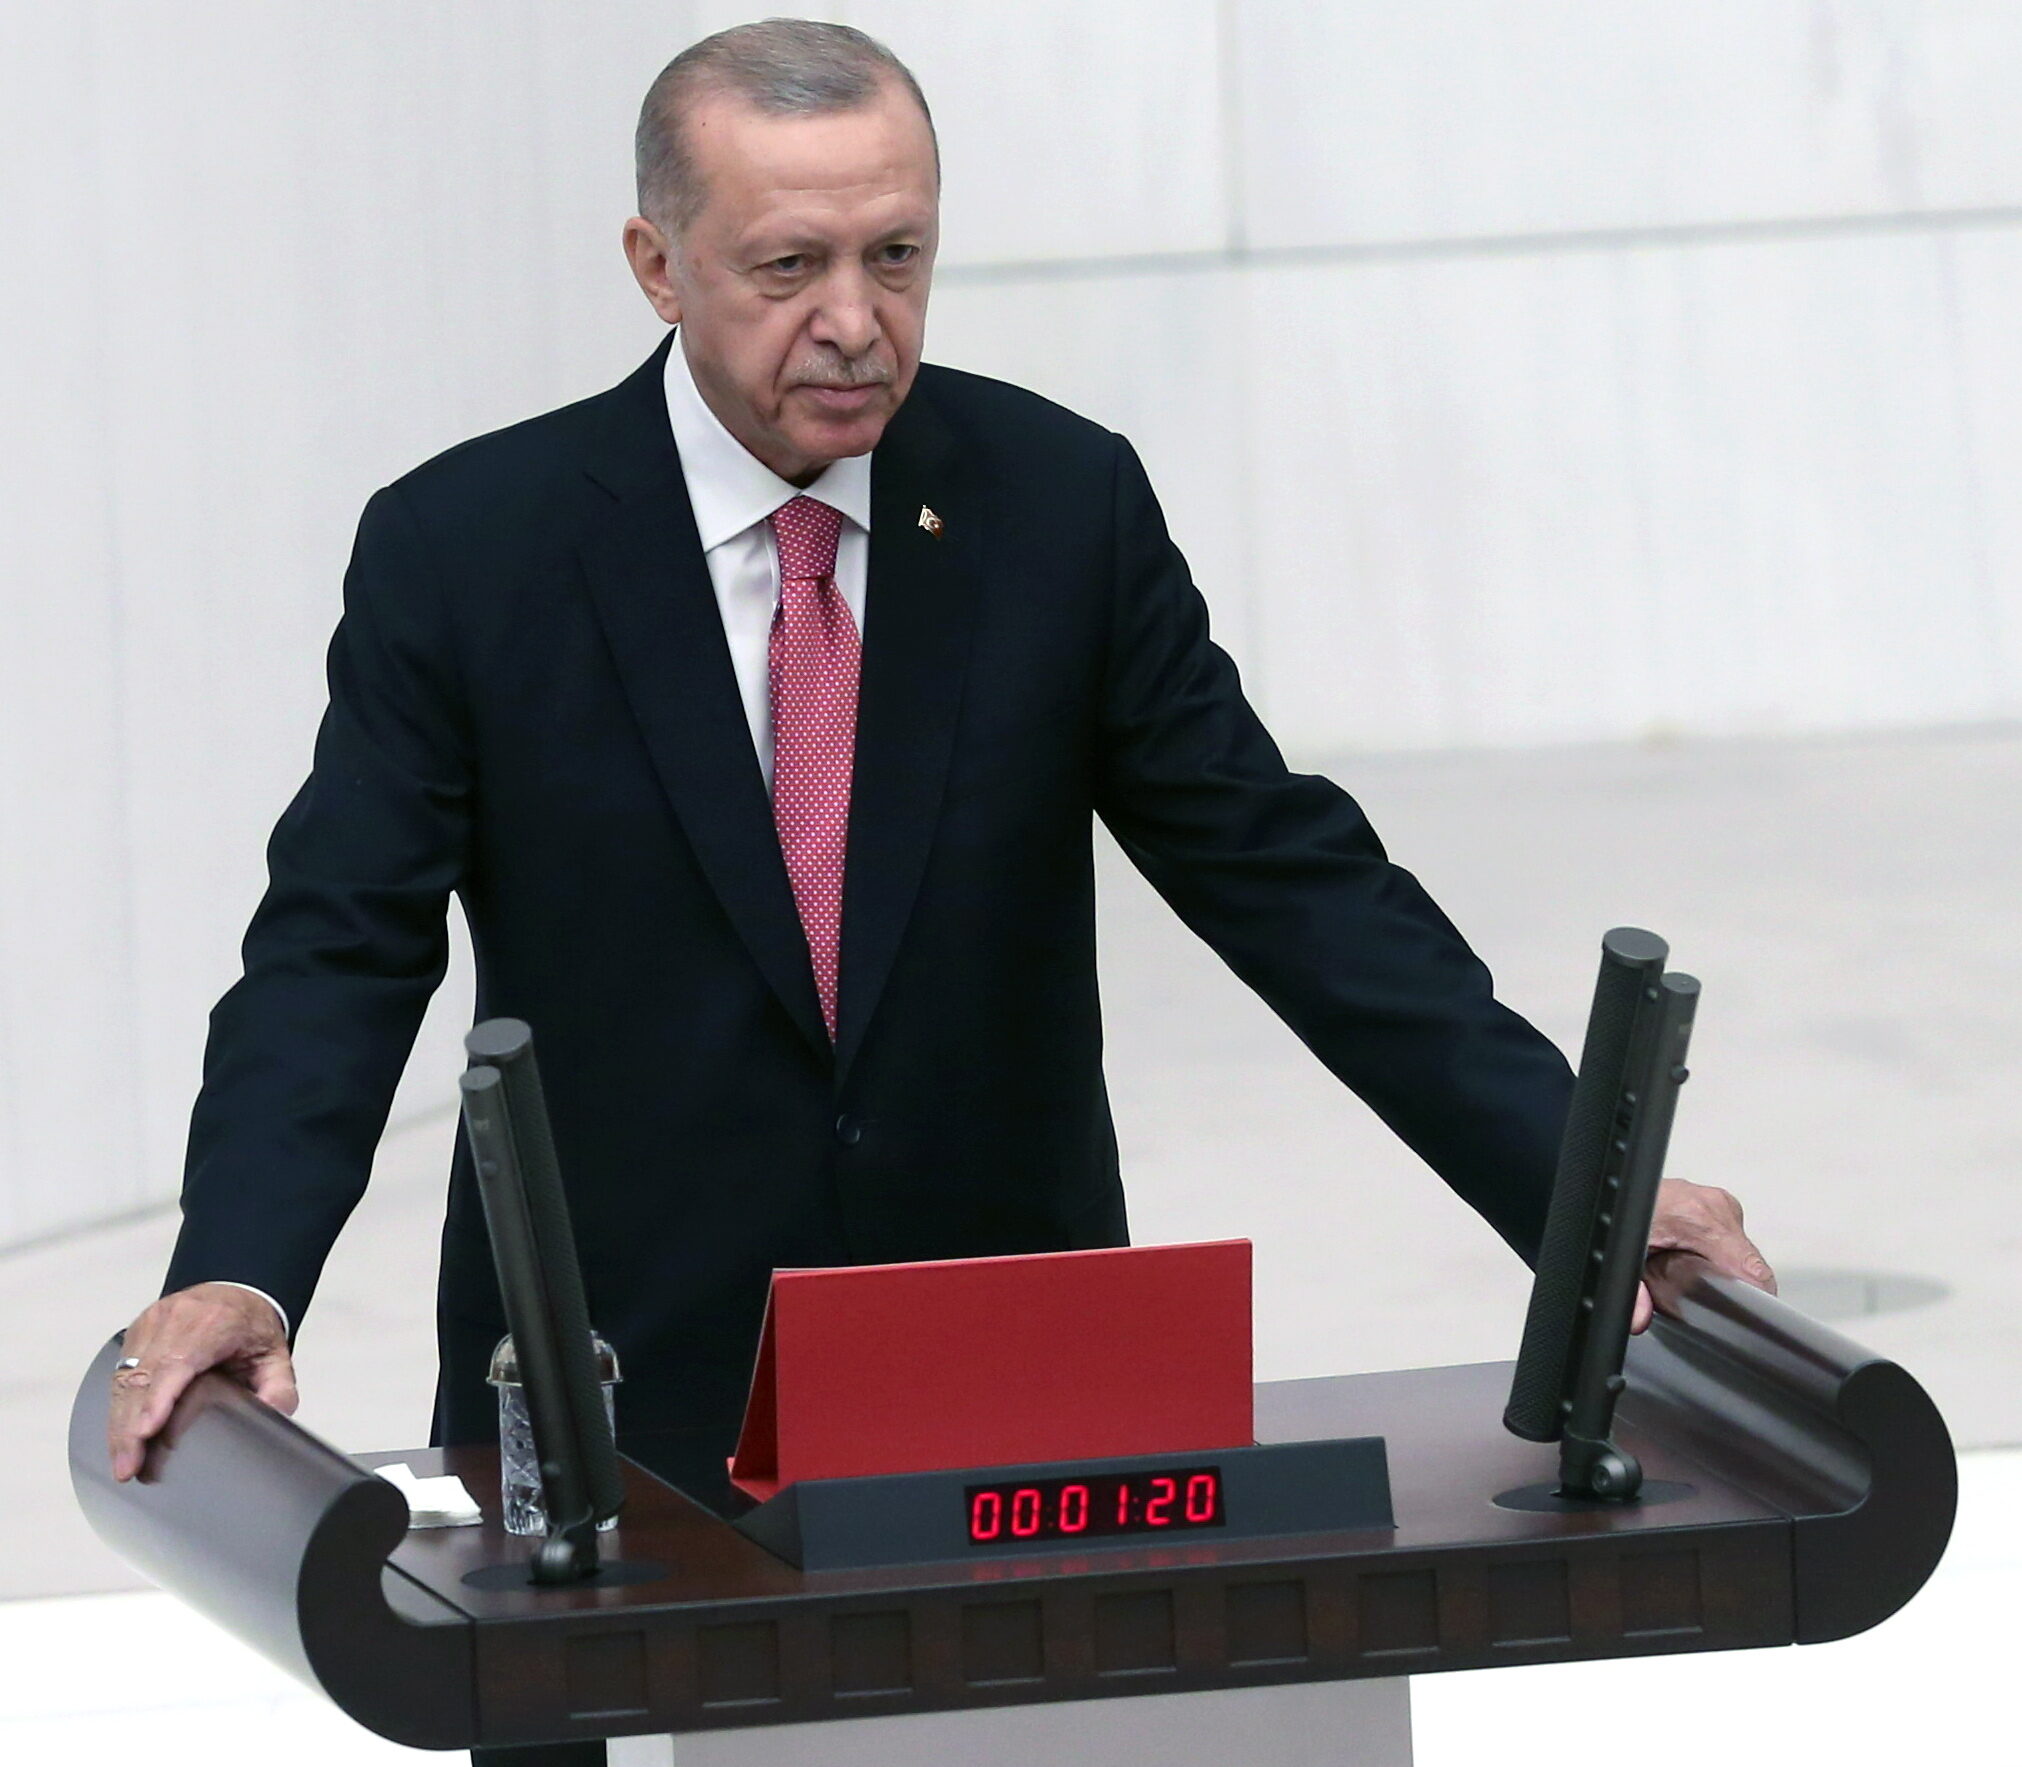 Ο Ερντογάν καλεί τους Τούρκους "να ενωθούν" και προαναγγέλλει συνταγματική αναθεώρηση - Δεν ξέχασε τη Γαλάζια Πατρίδα